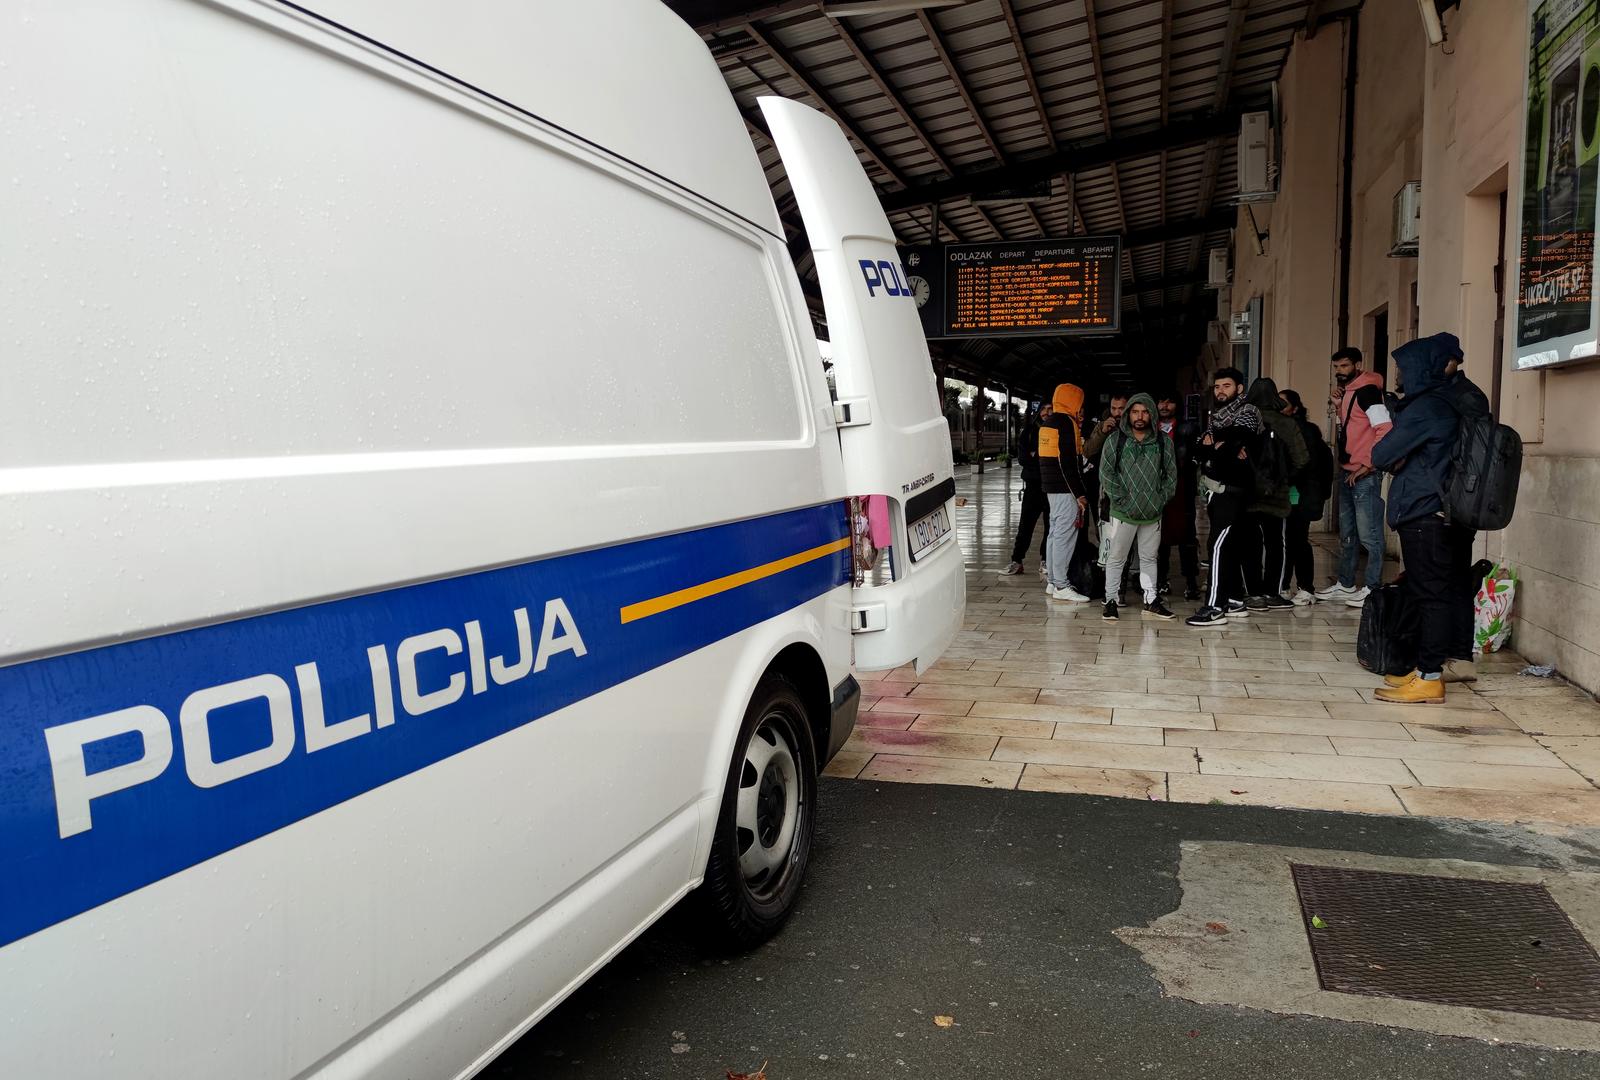 25.10.2022., Zagreb - Policija je na Glavnom kolodvoru pretrazila nekoliko migranata te ih nakon toga odvezla u policijskom kombiju Photo: Slaven Branislav Babic/PIXSELL